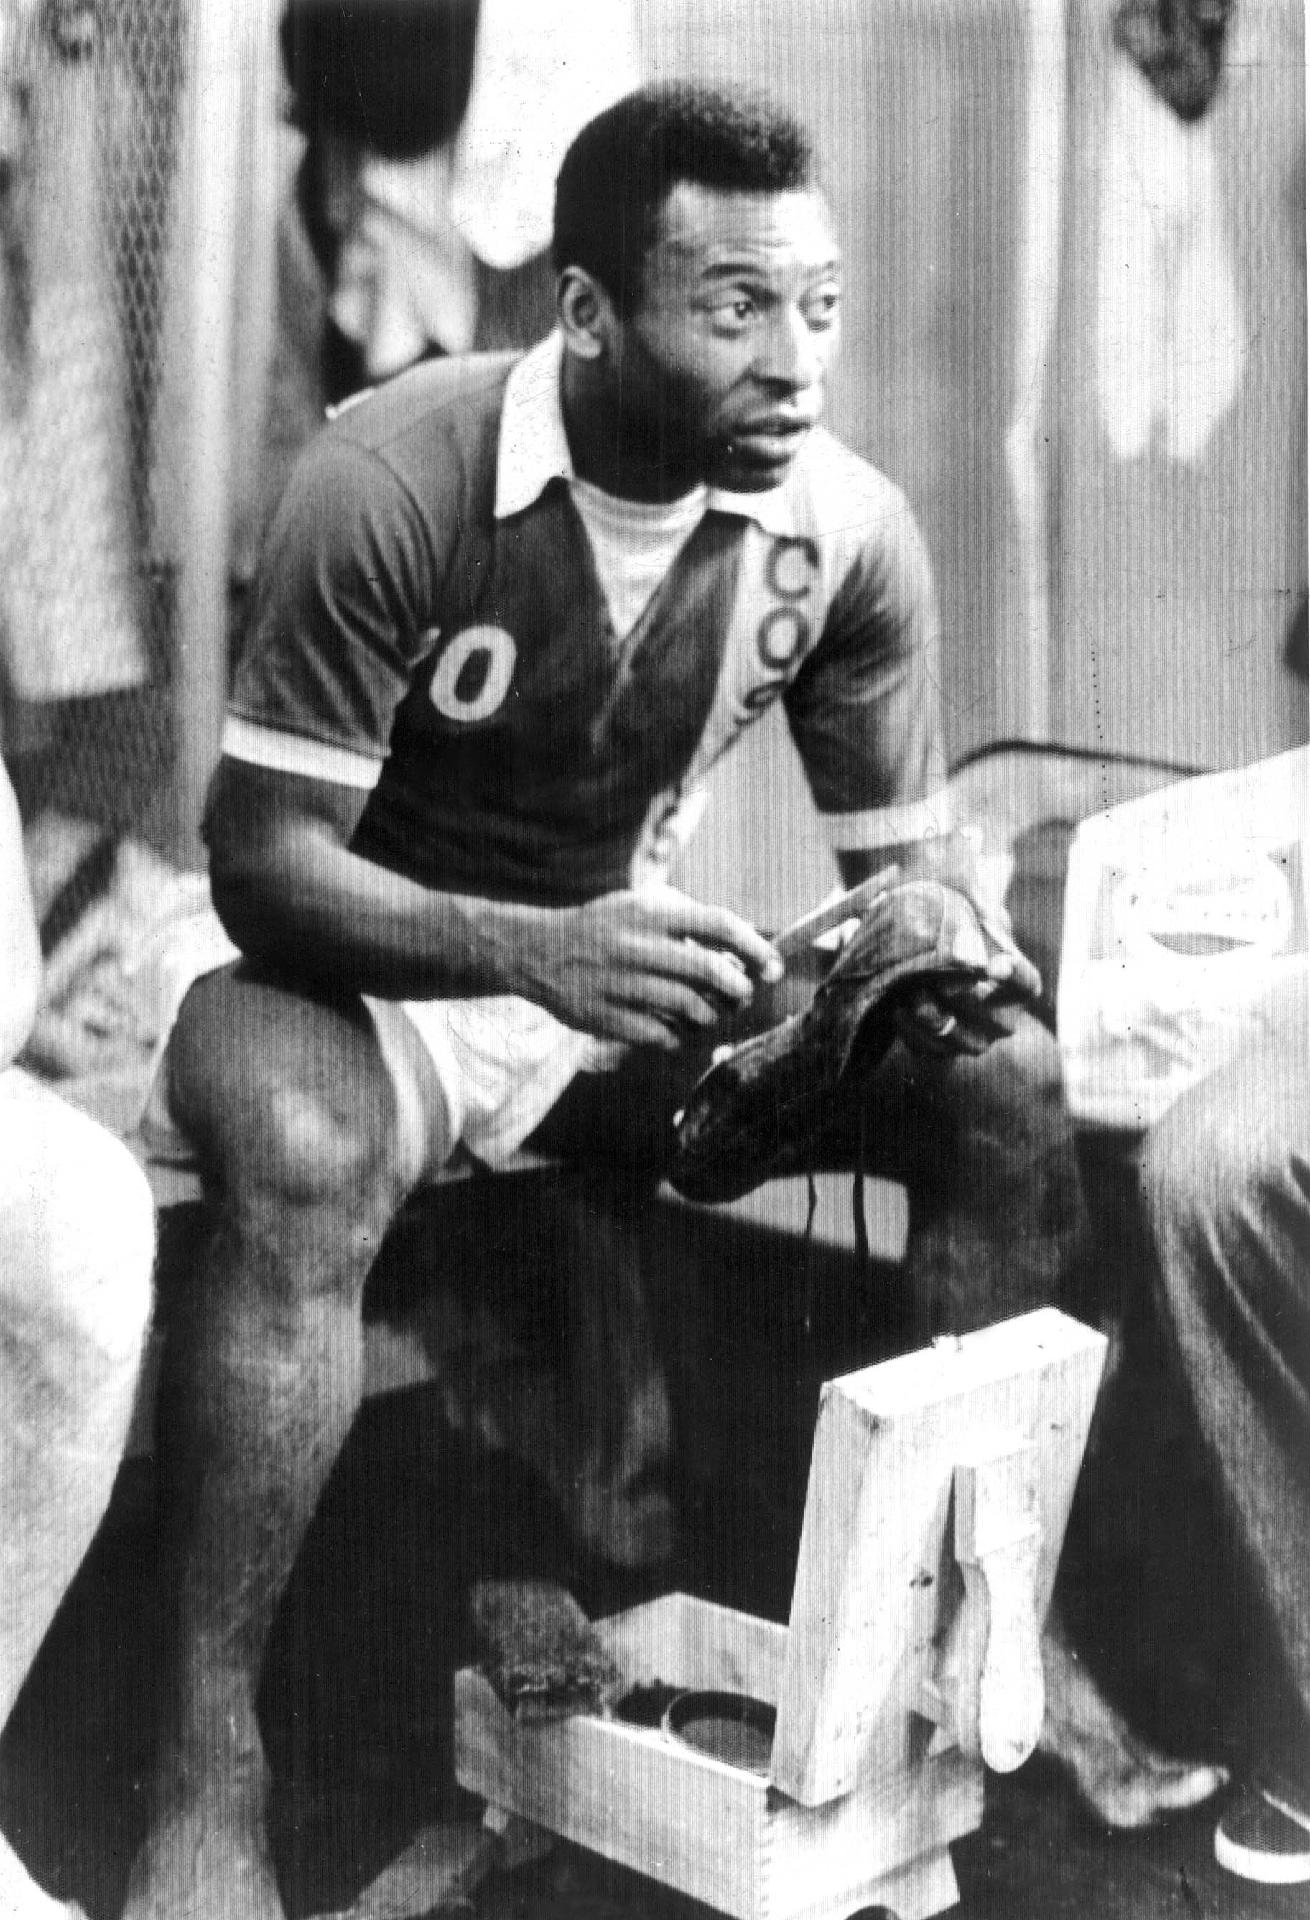 01/01/1975 - Pelé, nos vestiários do Cosmos (EUA), limpa a chuteira após partida válida pelo campeonato local. O craque atuou pelo clube norte americano de 1975 até 1977 e marcou 64 gols. - Domicio Pinheiro/Estadão Conteúdo